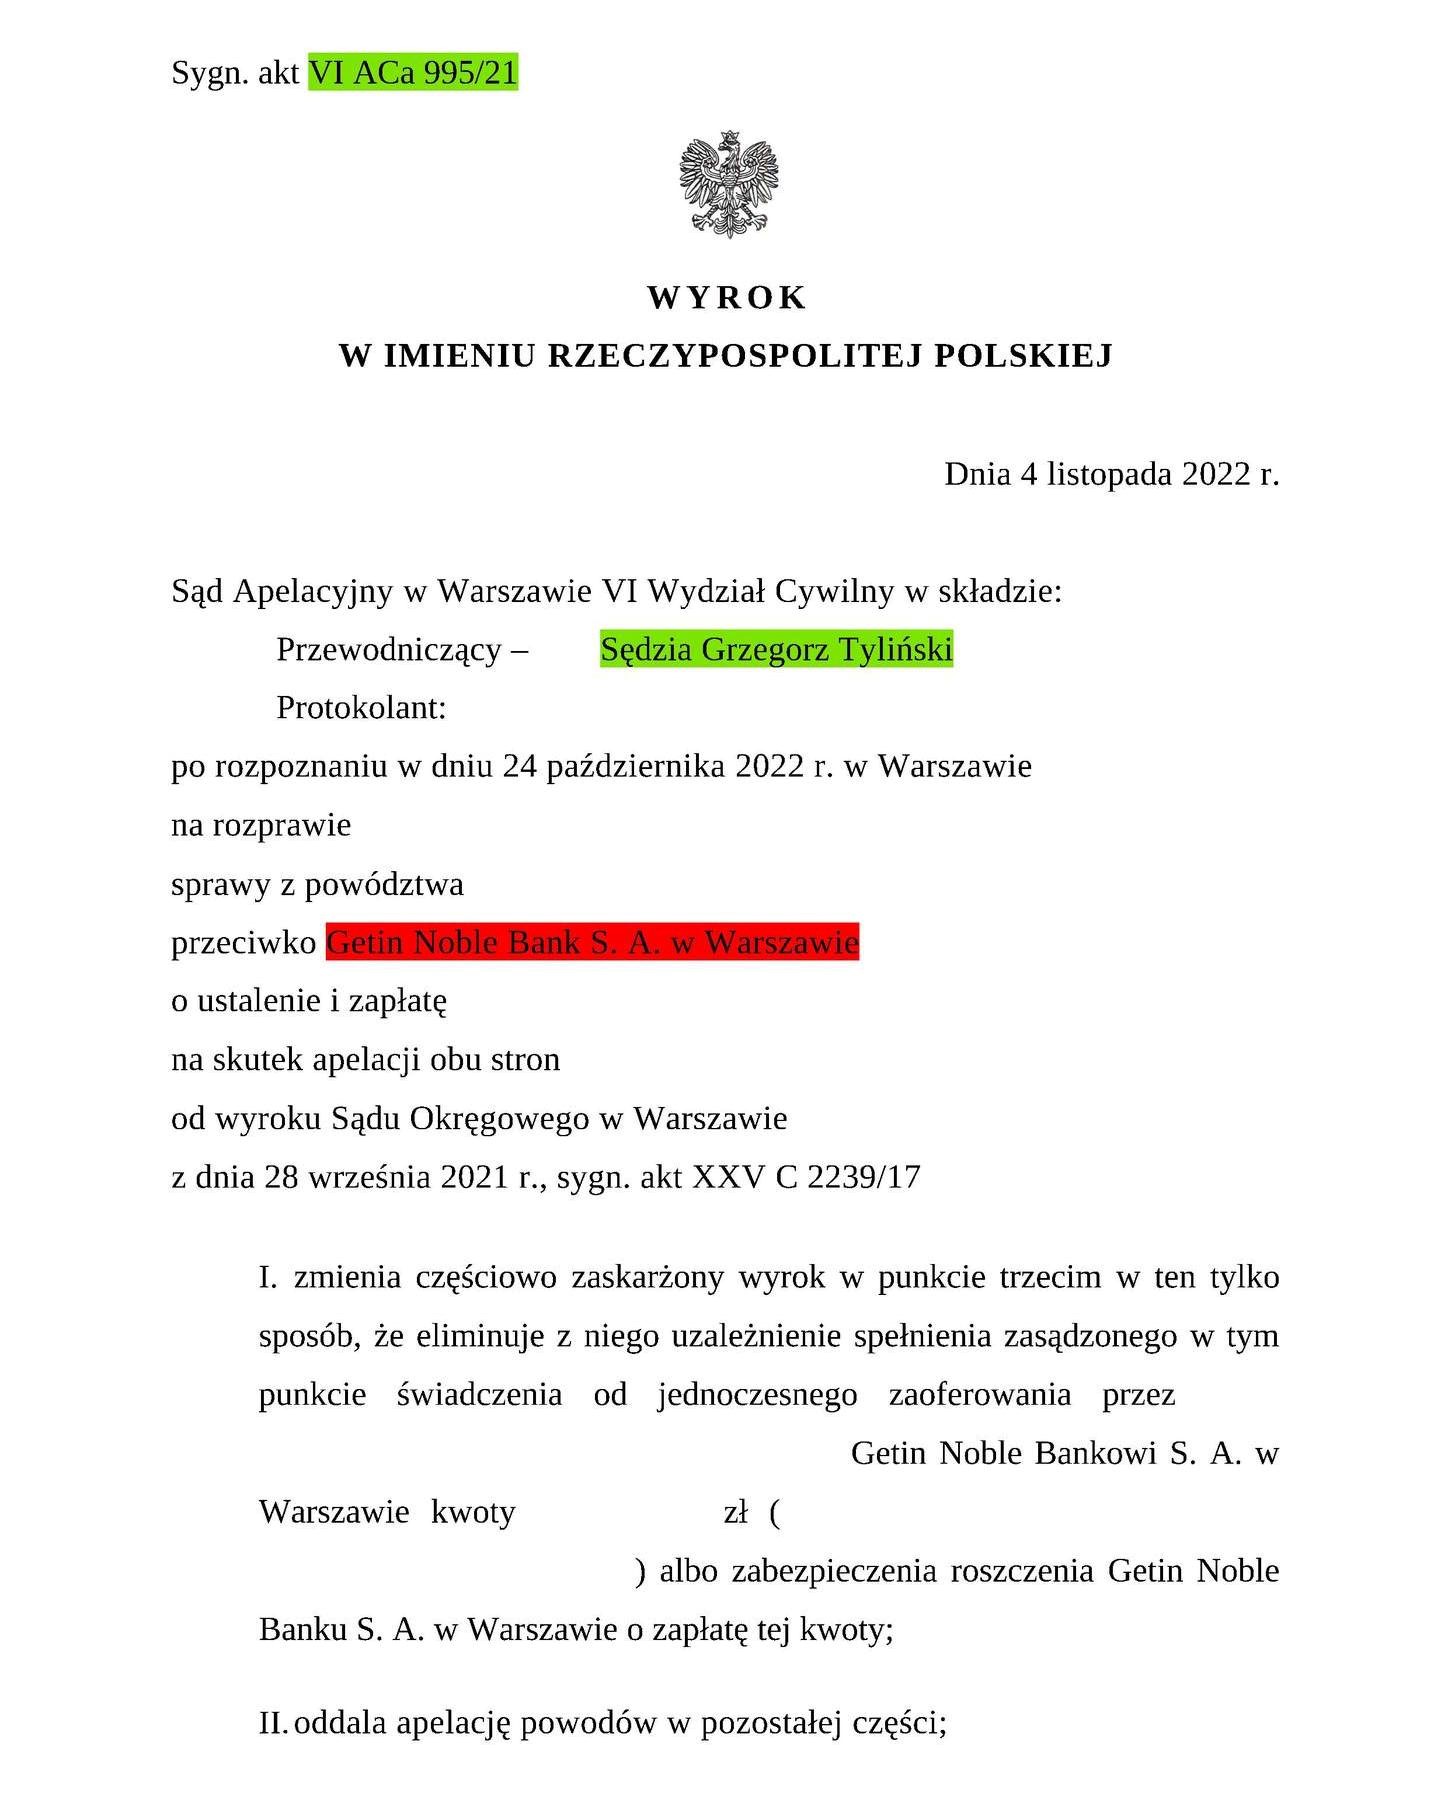 Wyrok Sądu Apelacyjnego w Warszawie z dnia 04.11.2022 r., sygn. akt VI ACa 995/21